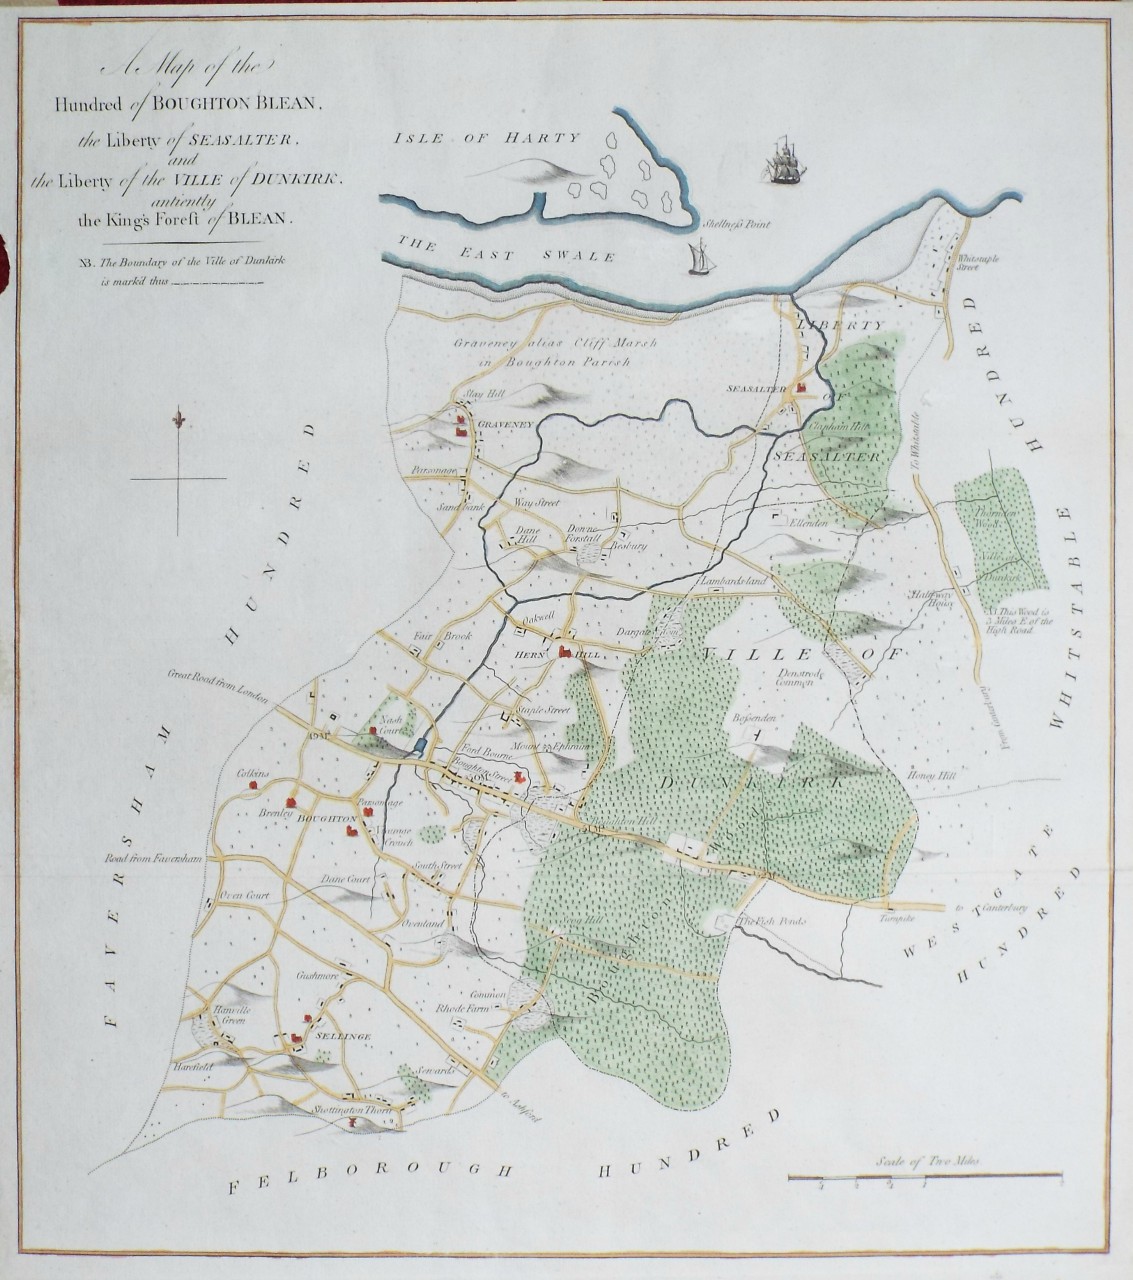 Map of Boughton Blean